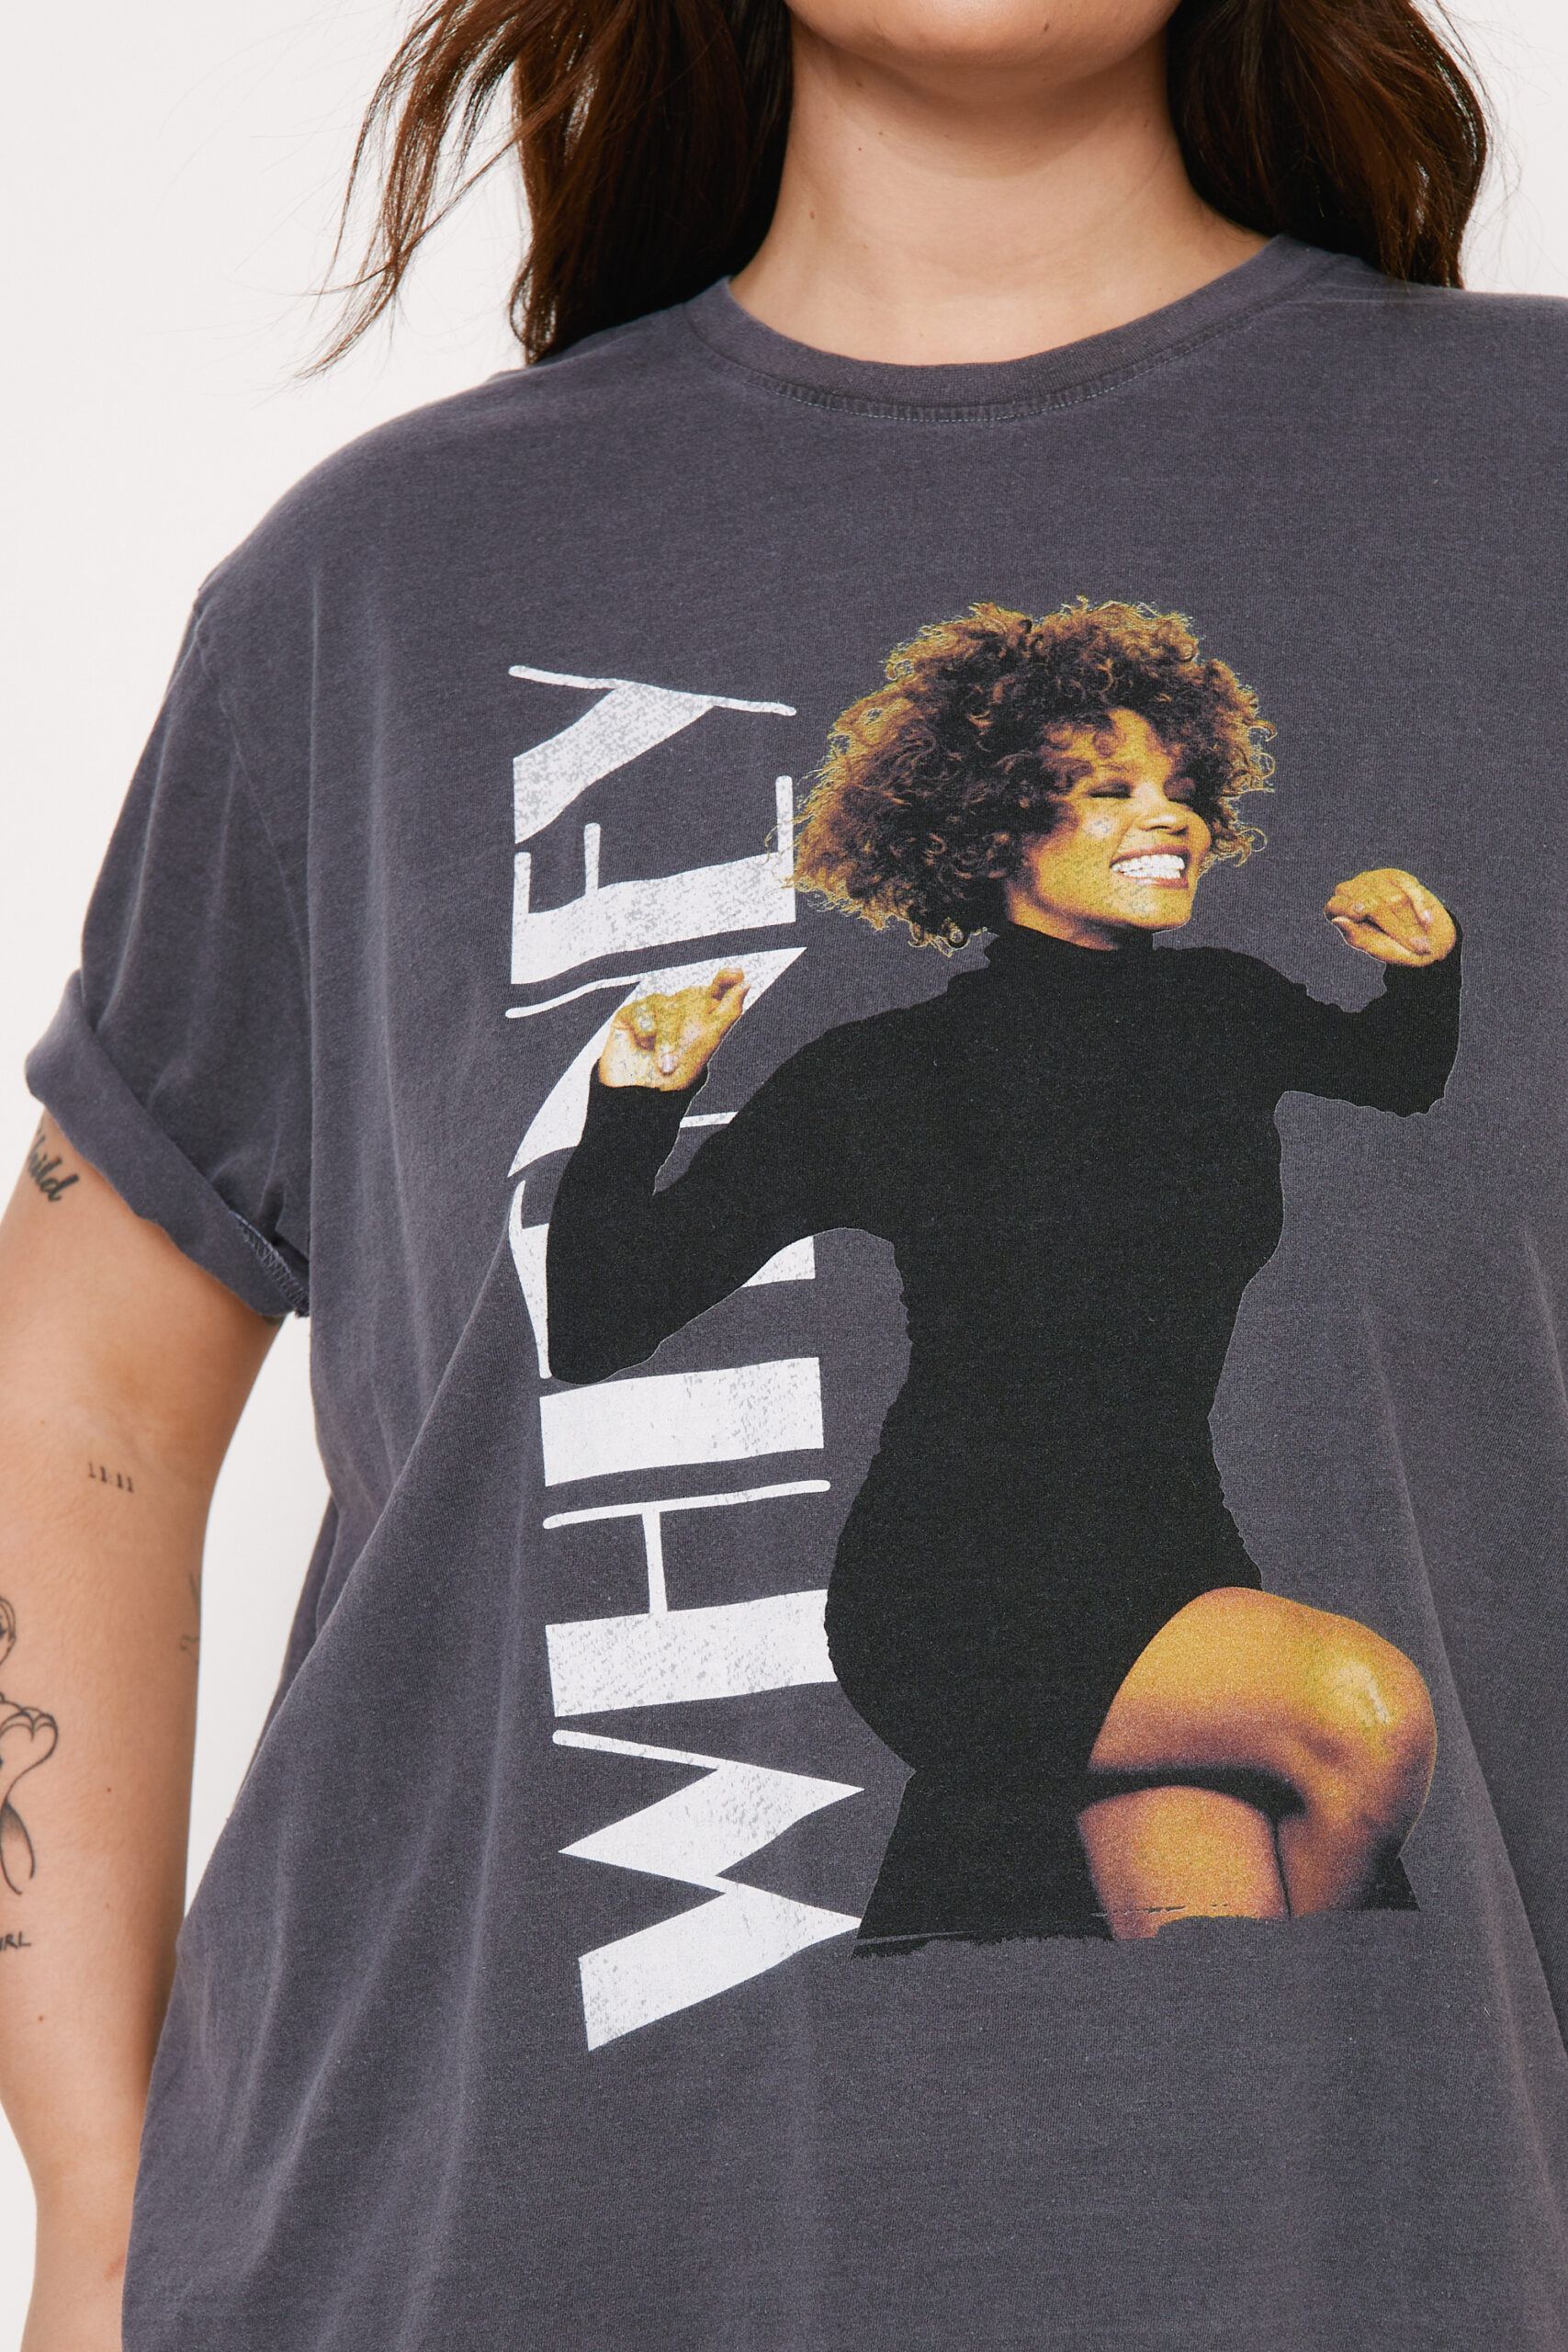 Plus Size Whitney Houston Graphic Overdyed Oversized T-Shirt